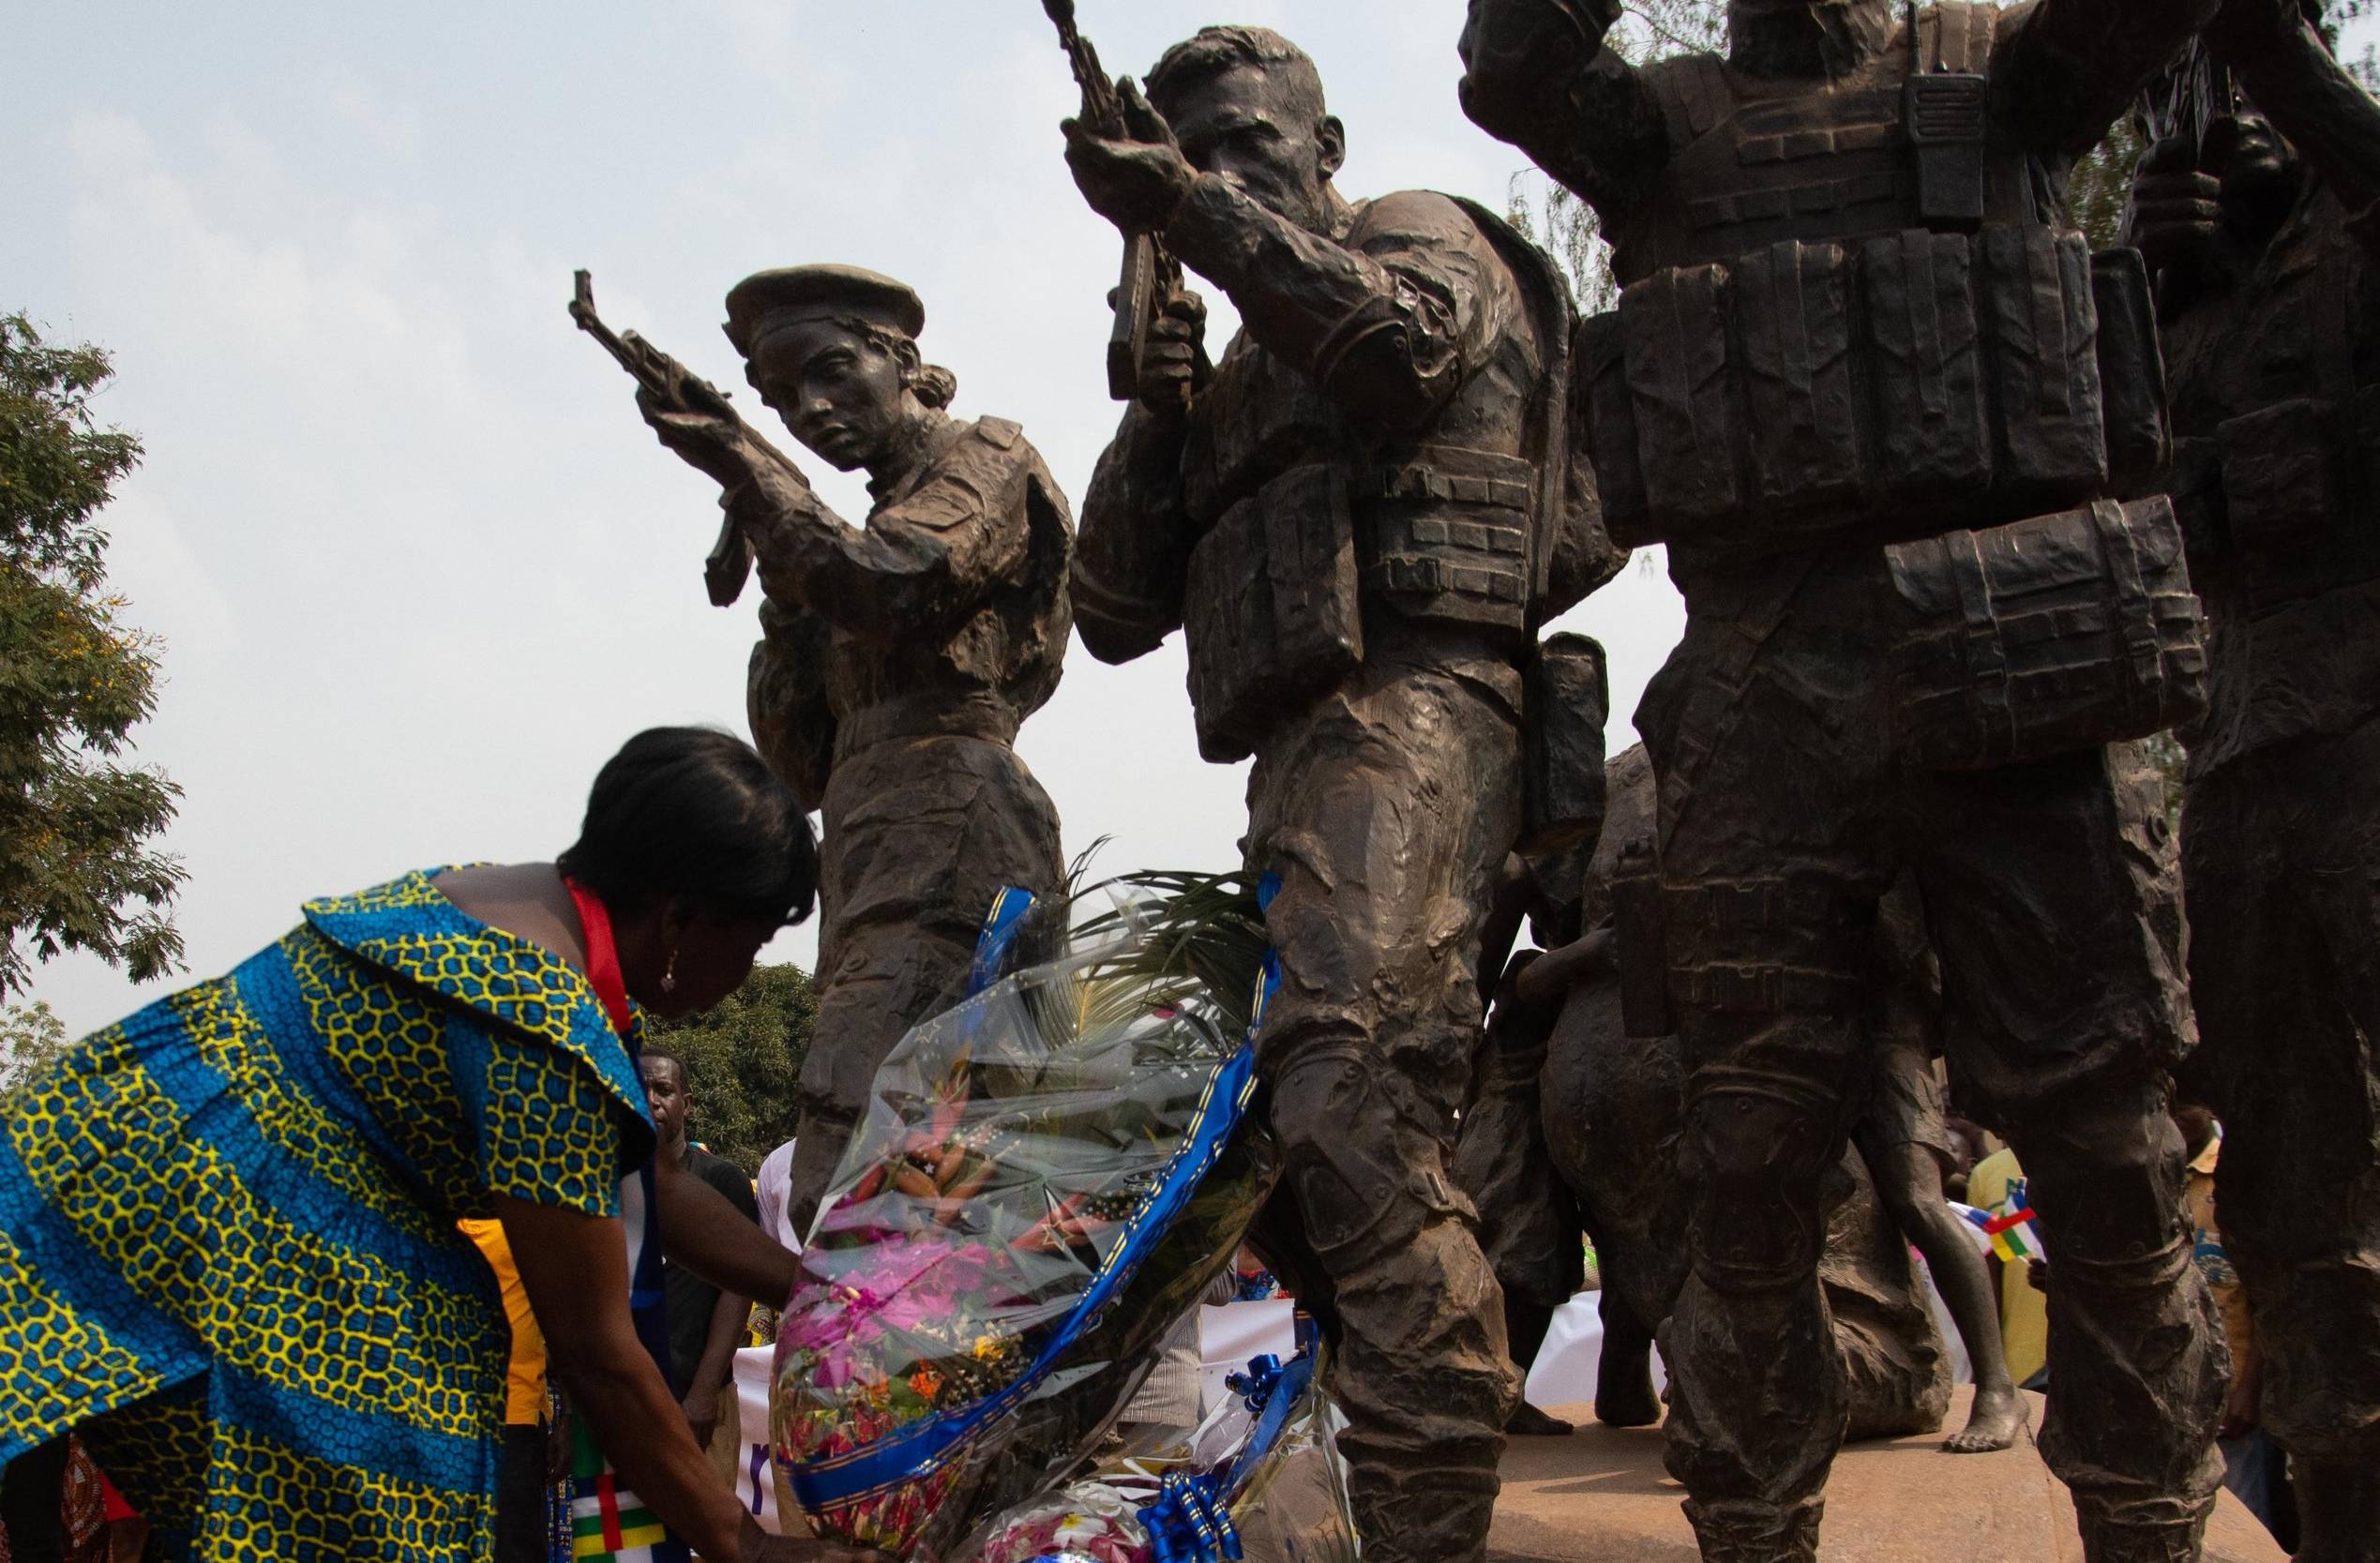 Afrykanka w barwnej sukni składa kwiaty pod pomnikiem przedstawiającym żołnierzy